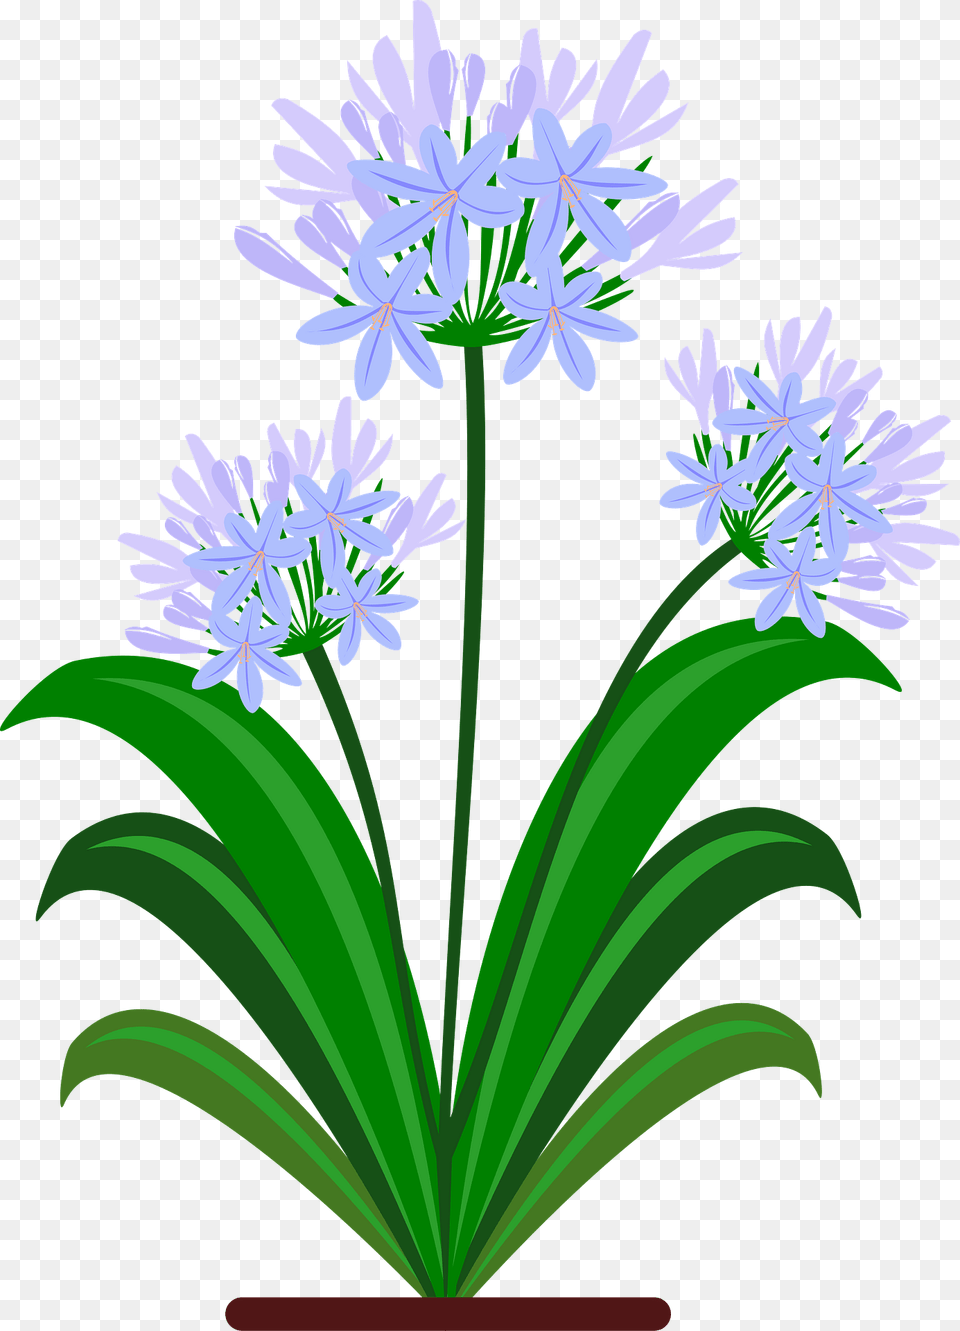 Purple Primavera Flowers Clipart, Flower, Plant, Flower Arrangement, Agapanthus Free Transparent Png